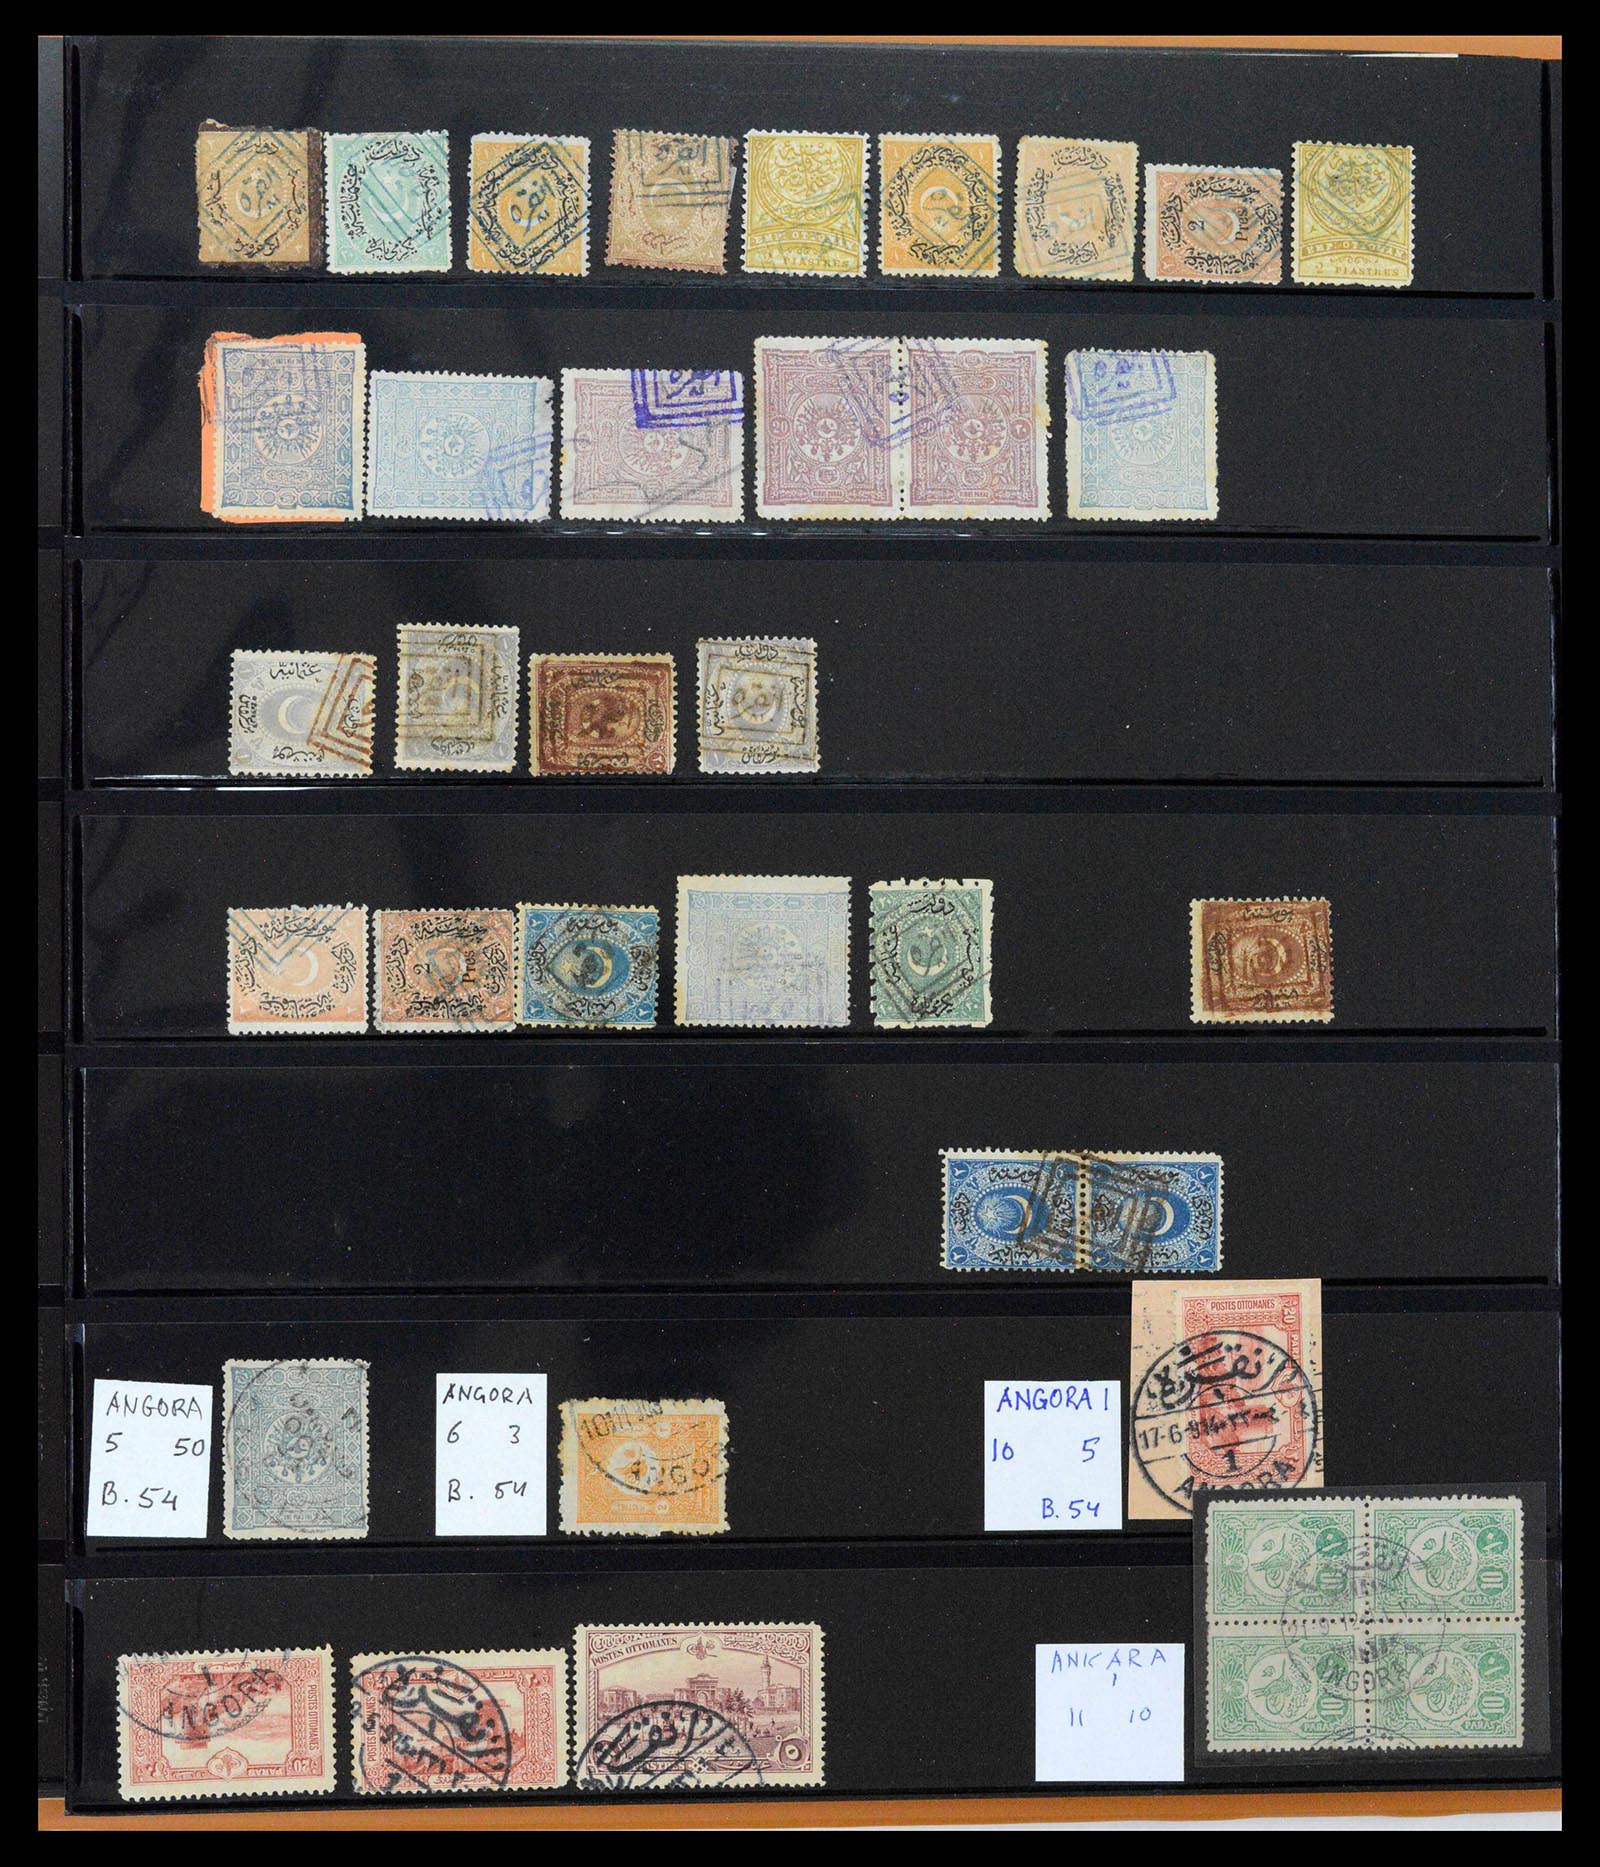 39345 0025 - Postzegelverzameling 39345 Turkije supercollectie stempels 1865-1930.